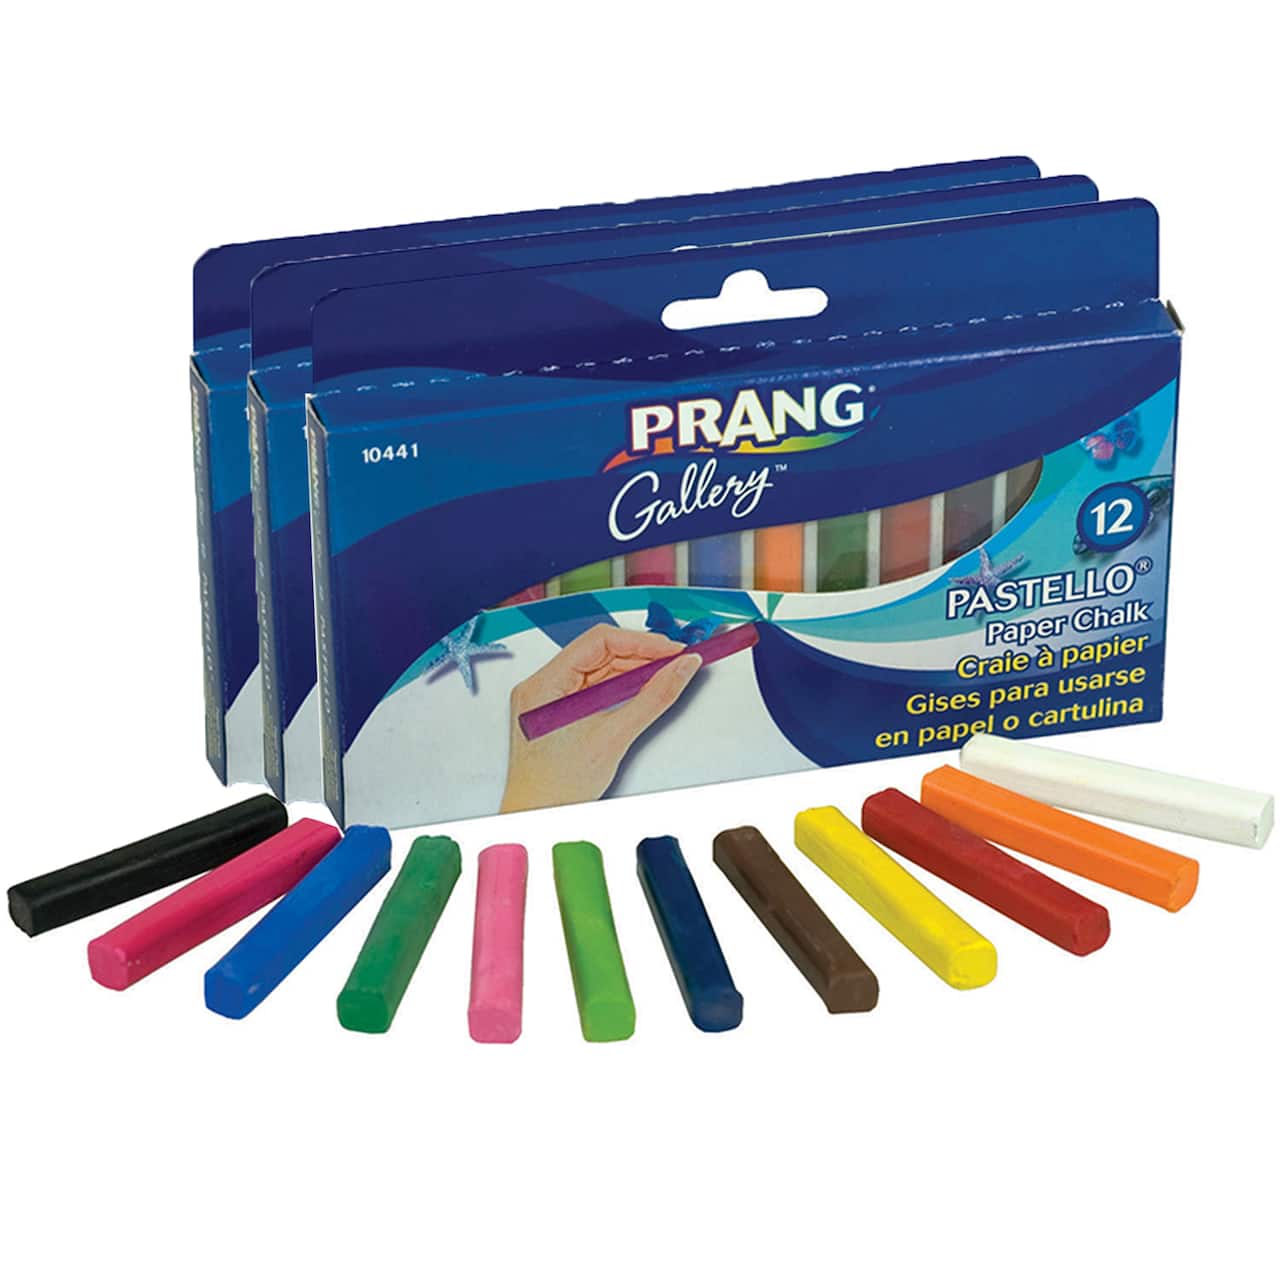 Prang&#xAE; Pastello&#xAE; Paper Chalk, 3 Packs of 12